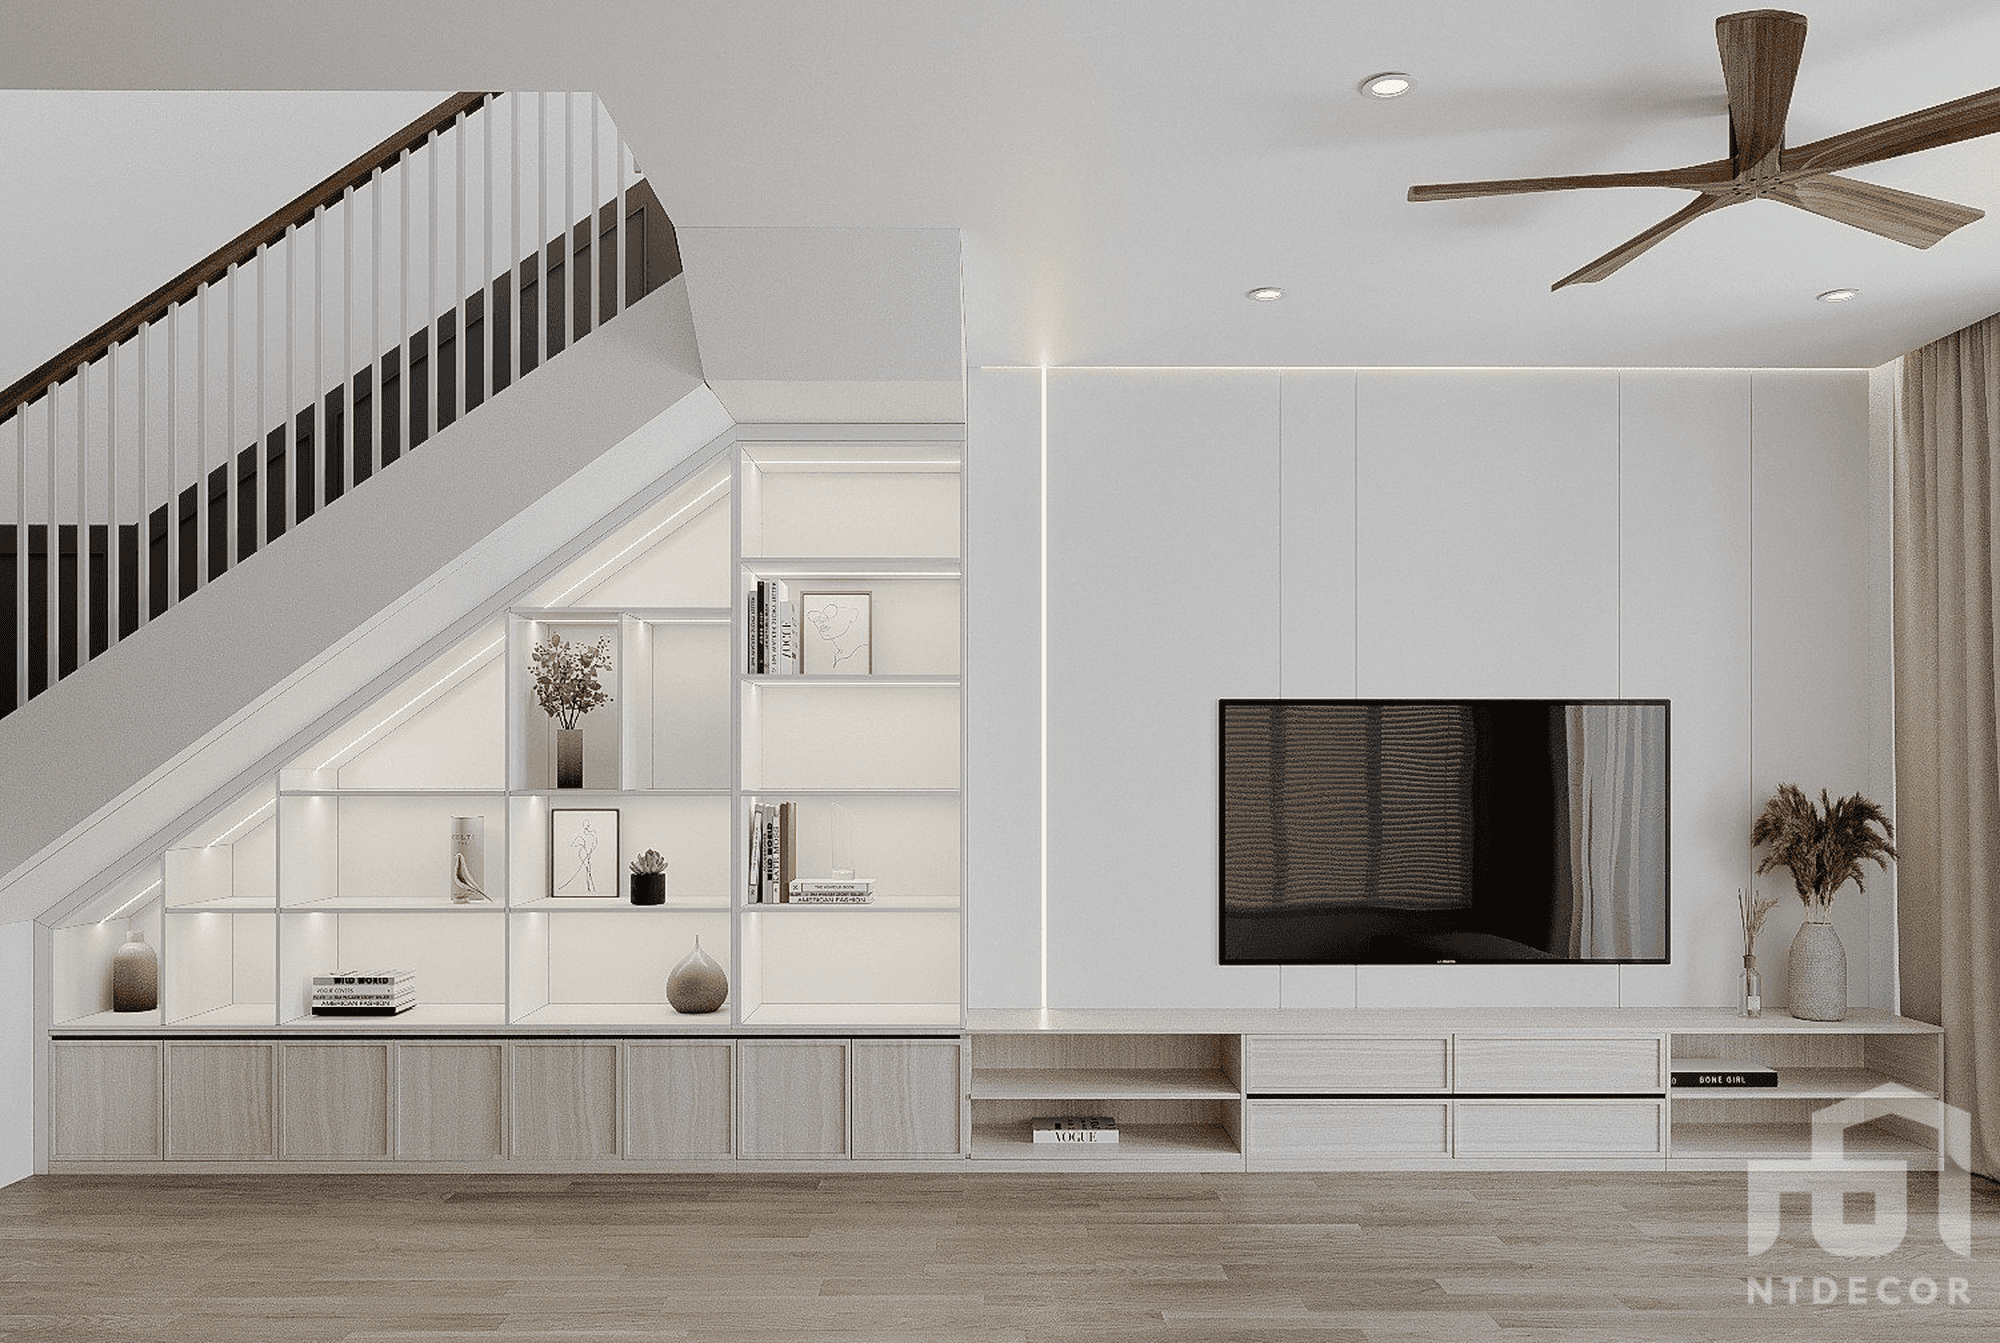 Living Room 3D Design of Daniel's House Interior Design Modern Style | NTDecor